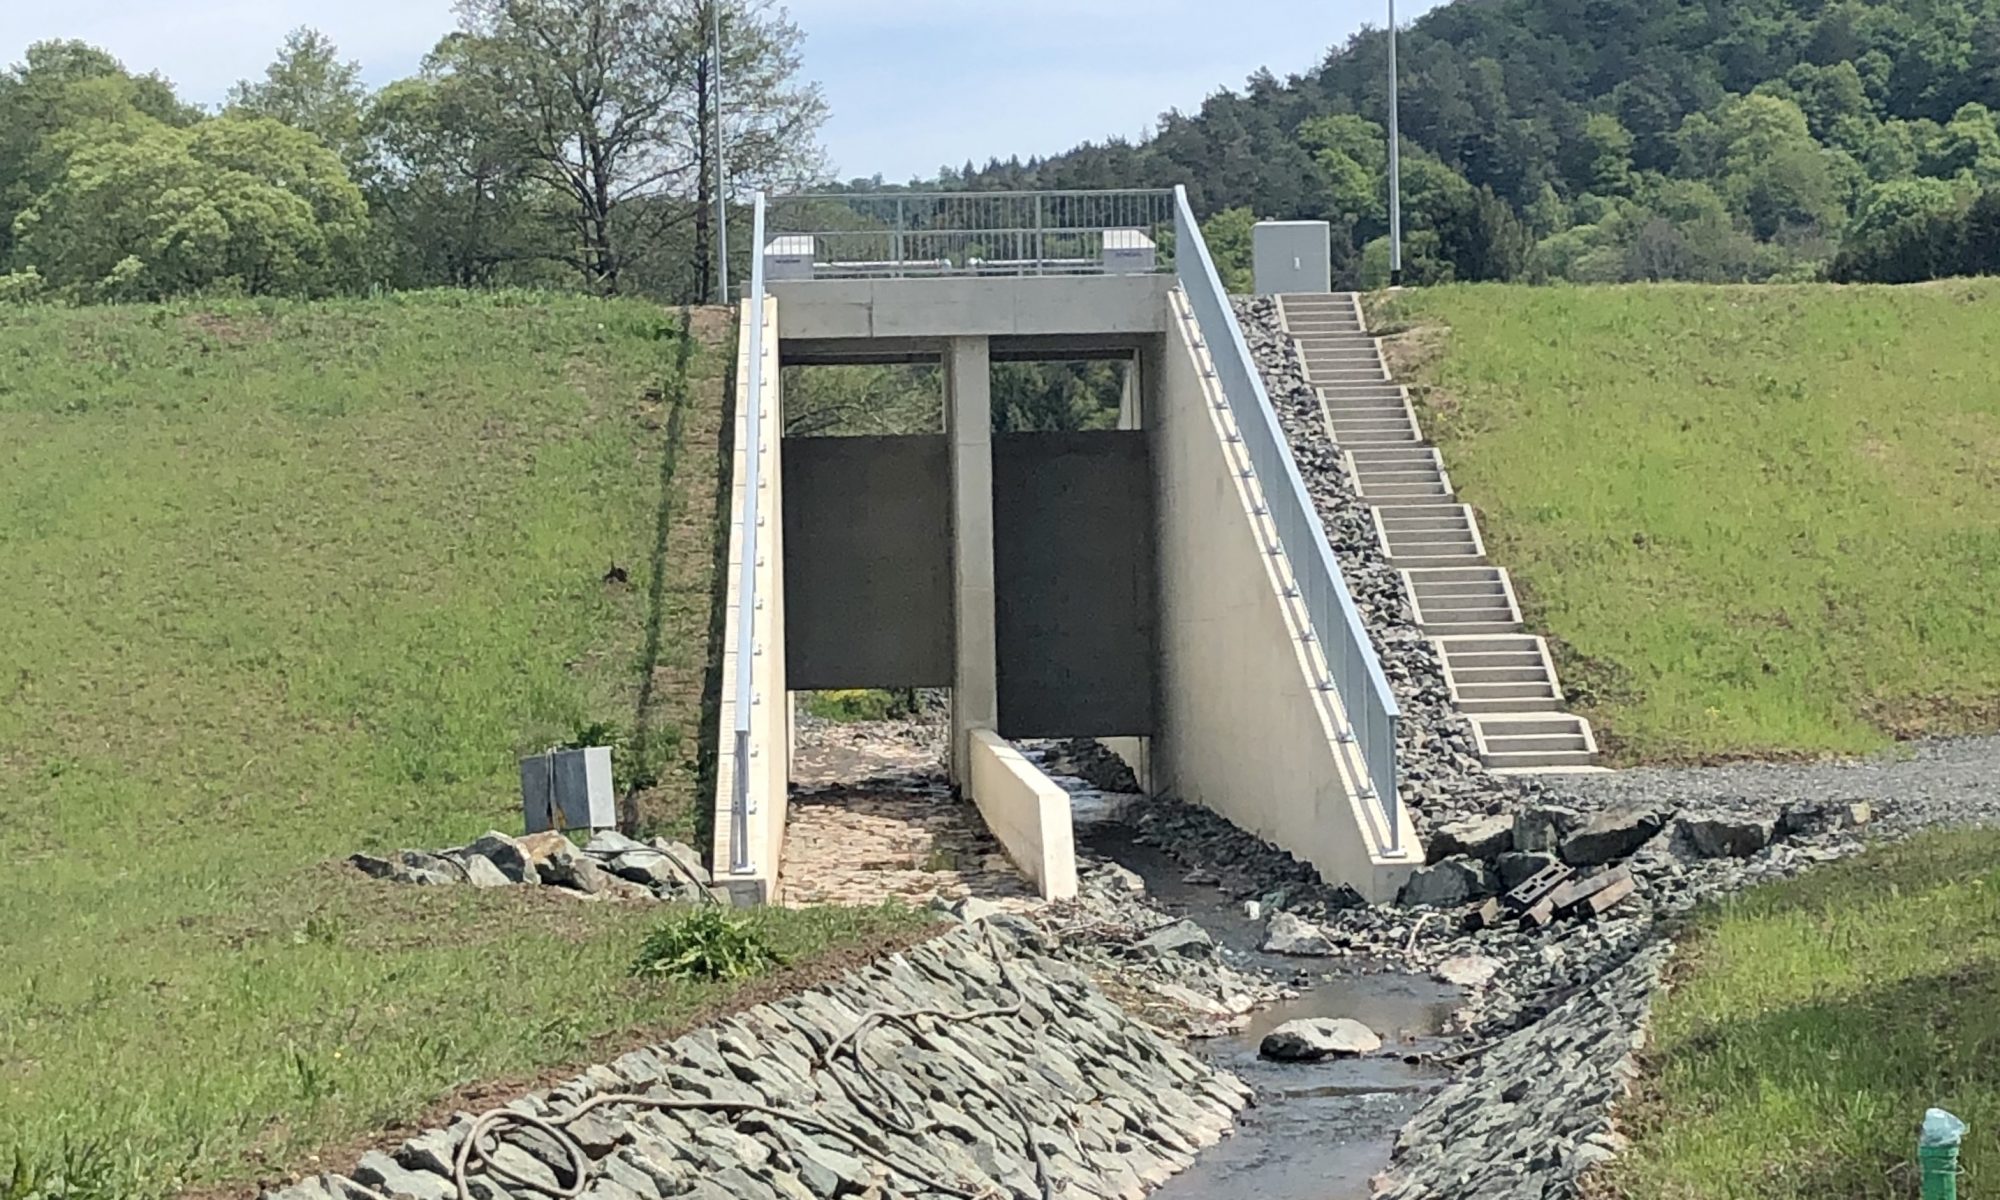 Hochwasserrückhaltebecken in Oberscheld "Irrschelde" mit Damm und Ablauf